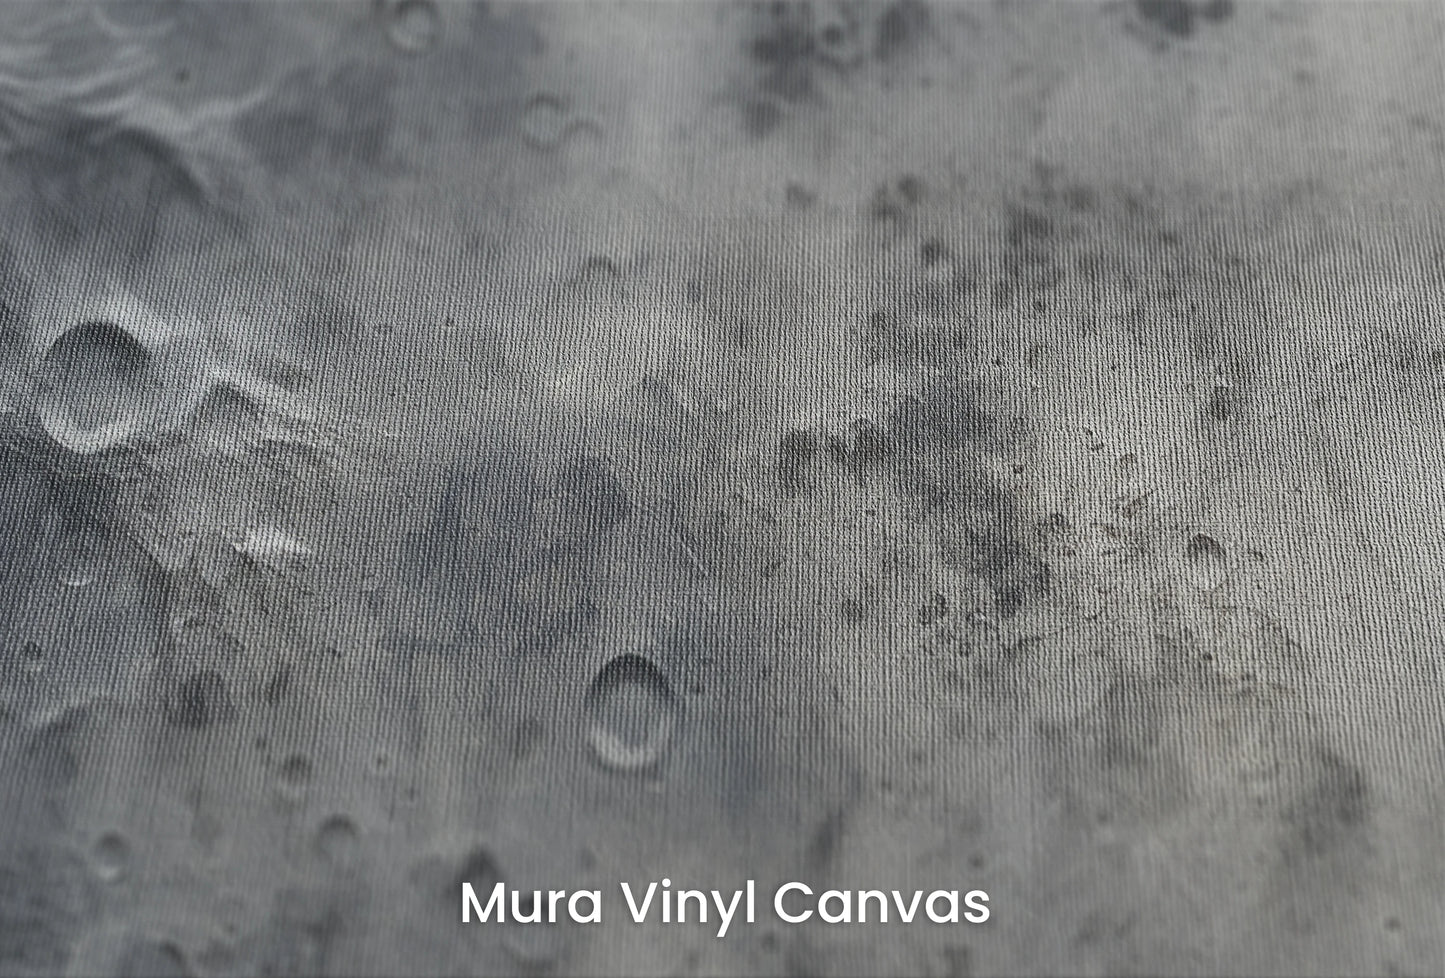 Zbliżenie na artystyczną fototapetę o nazwie Lunar Shadows na podłożu Mura Vinyl Canvas - faktura naturalnego płótna.